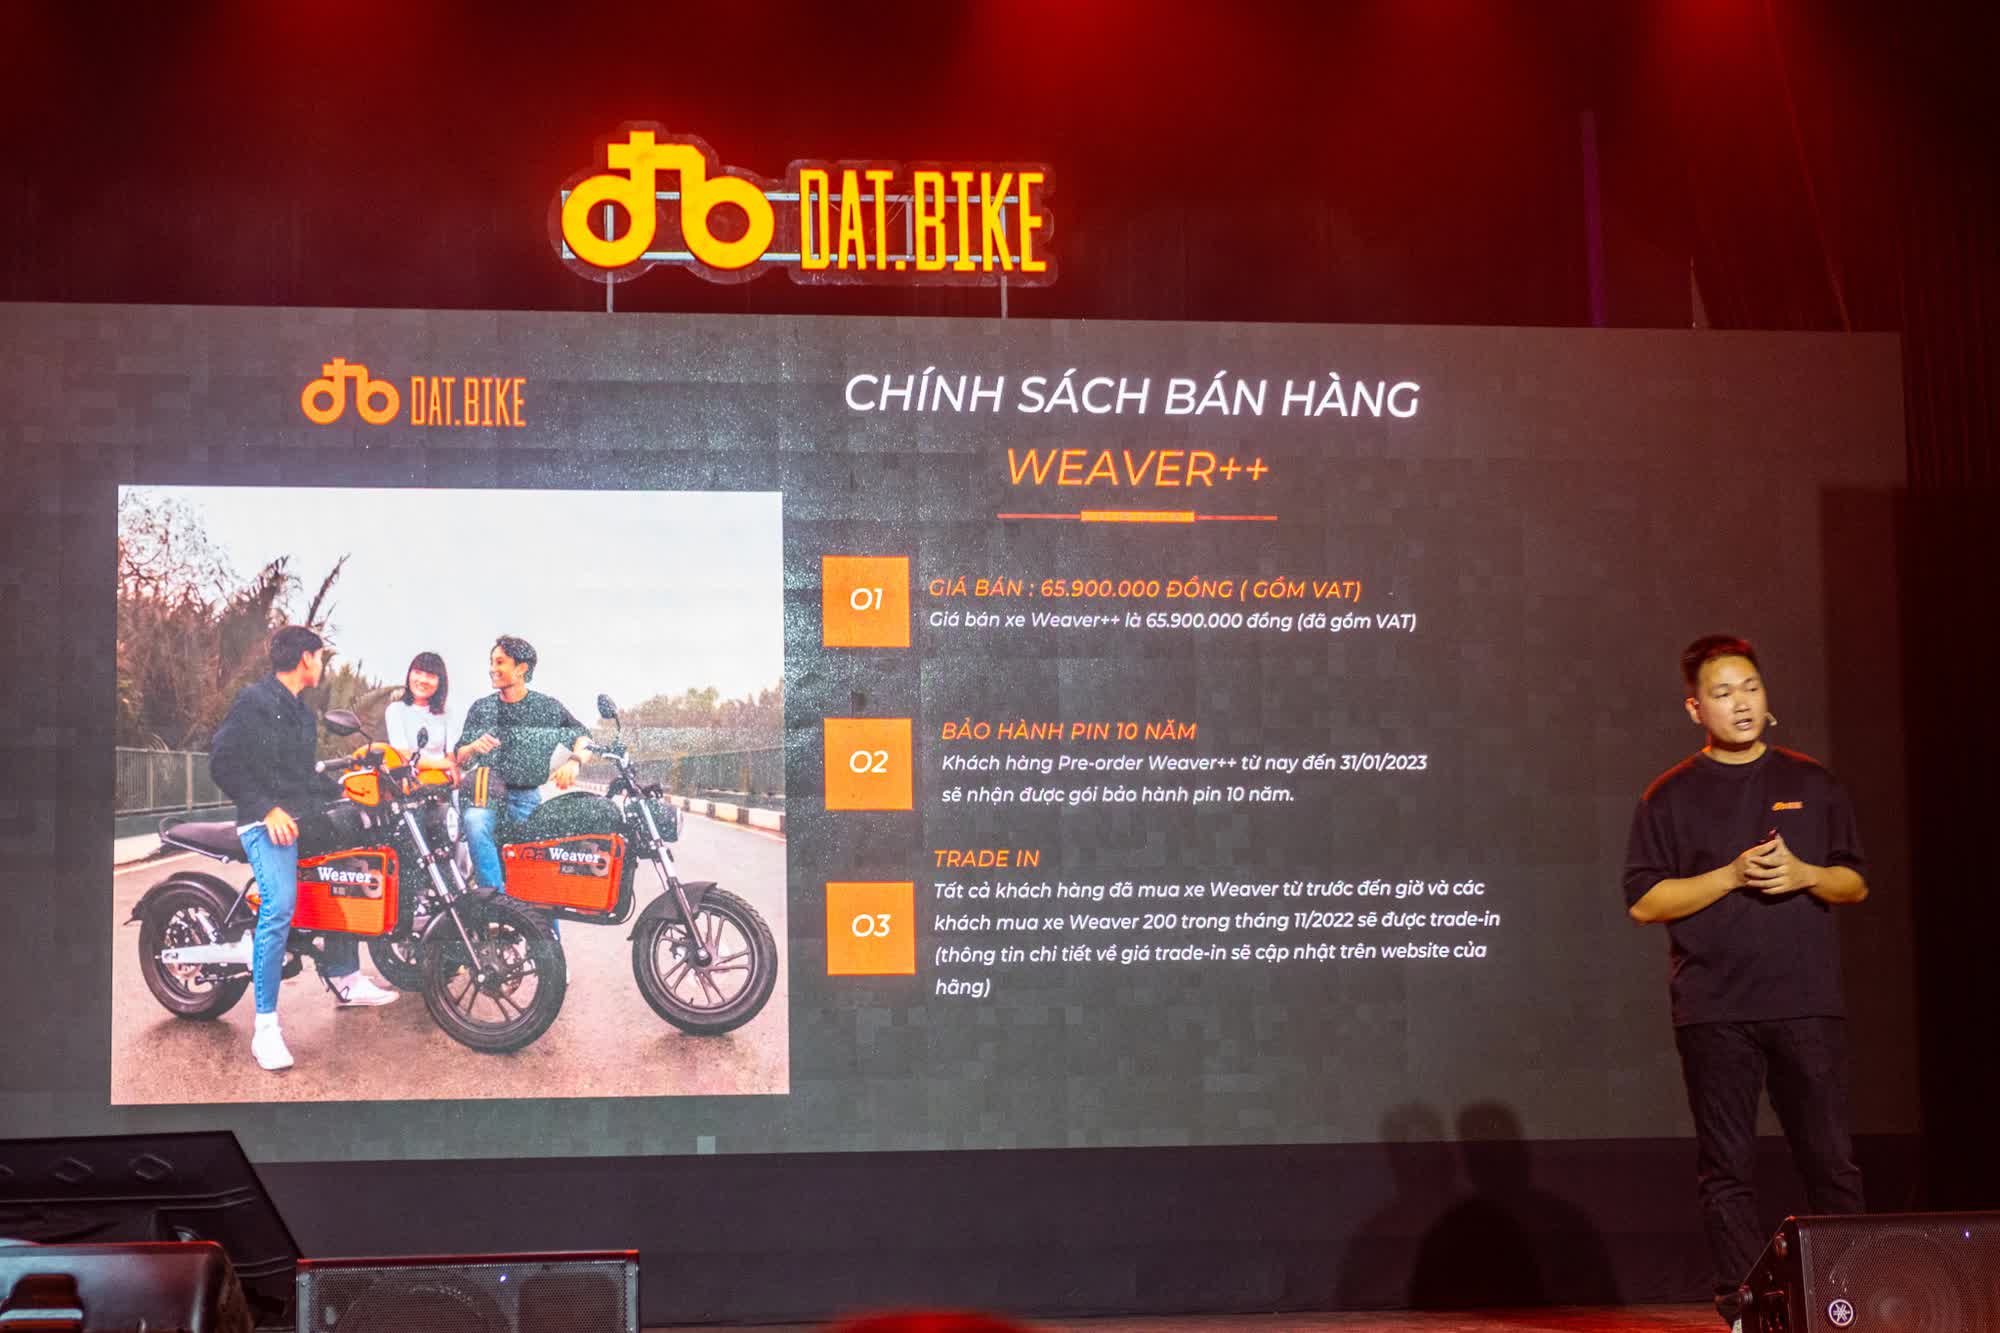 Ra mắt Dat Bike Weaver++: Giá 65,9 triệu đồng, dáng cổ điển, sạc nhanh chưa từng có tại Việt Nam - Ảnh 1.